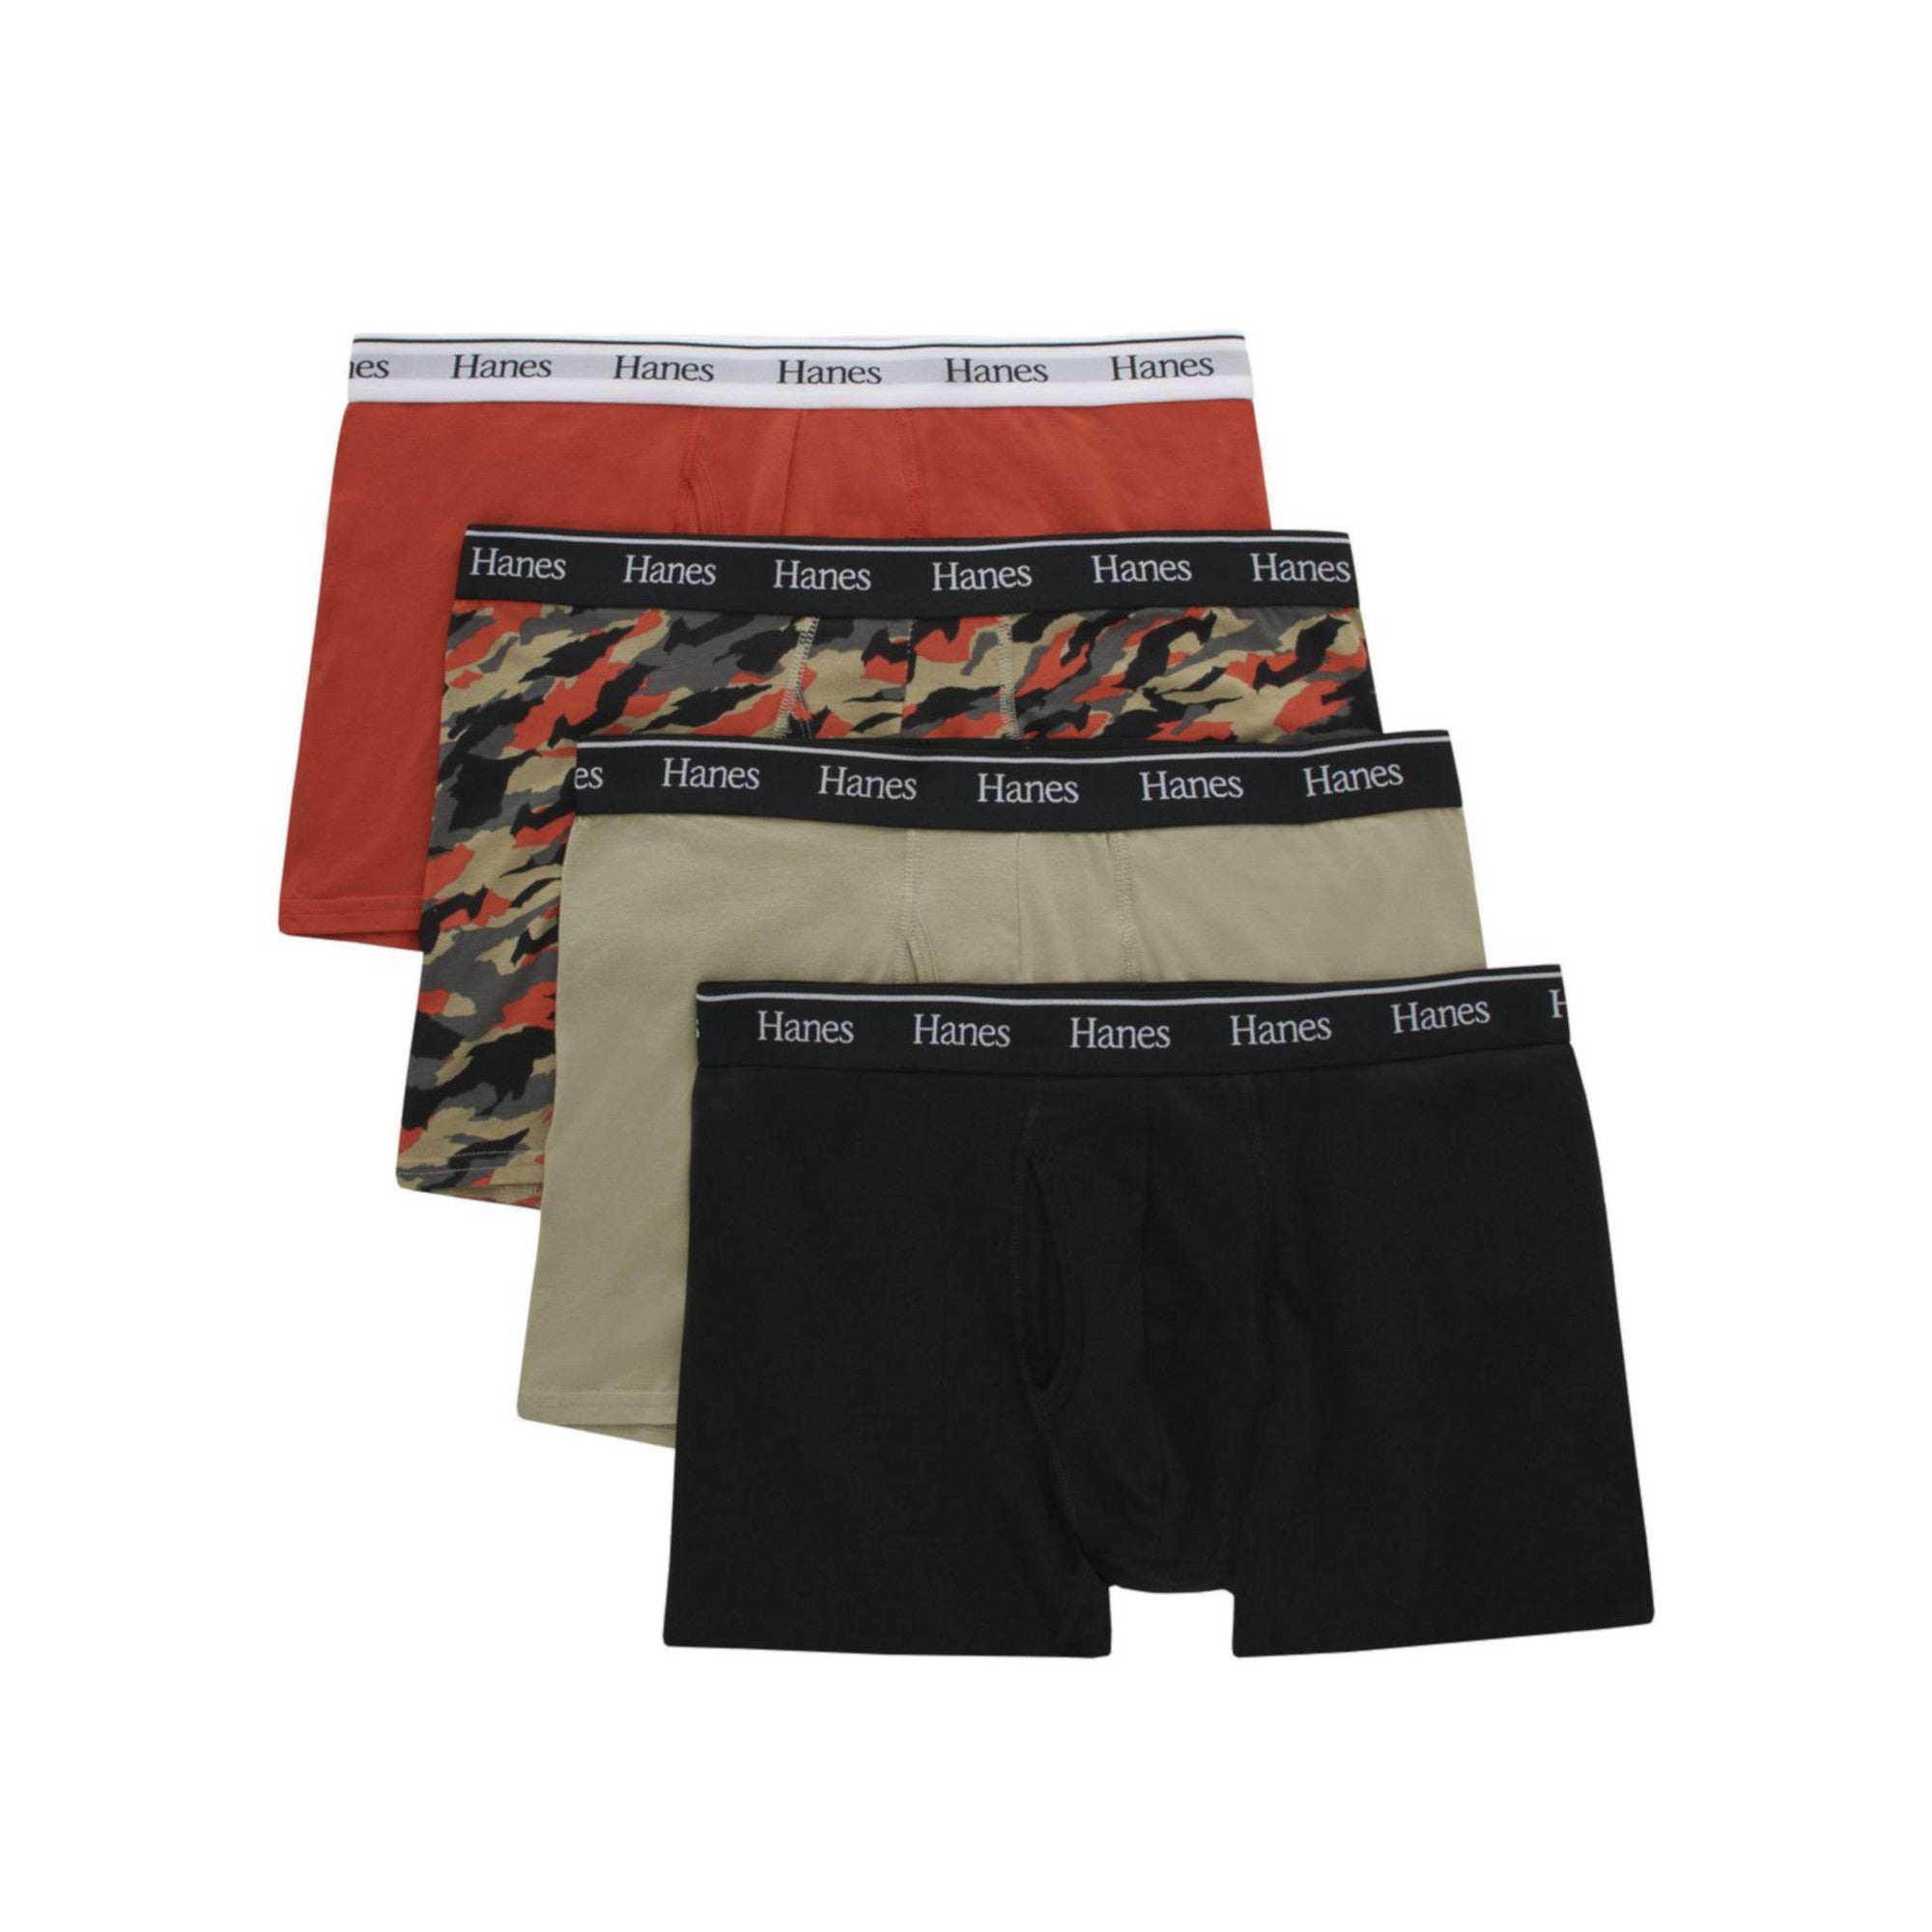 Hanes Originals Men’s Stretch Cotton Trunk Underwear, Moisture-Wicking